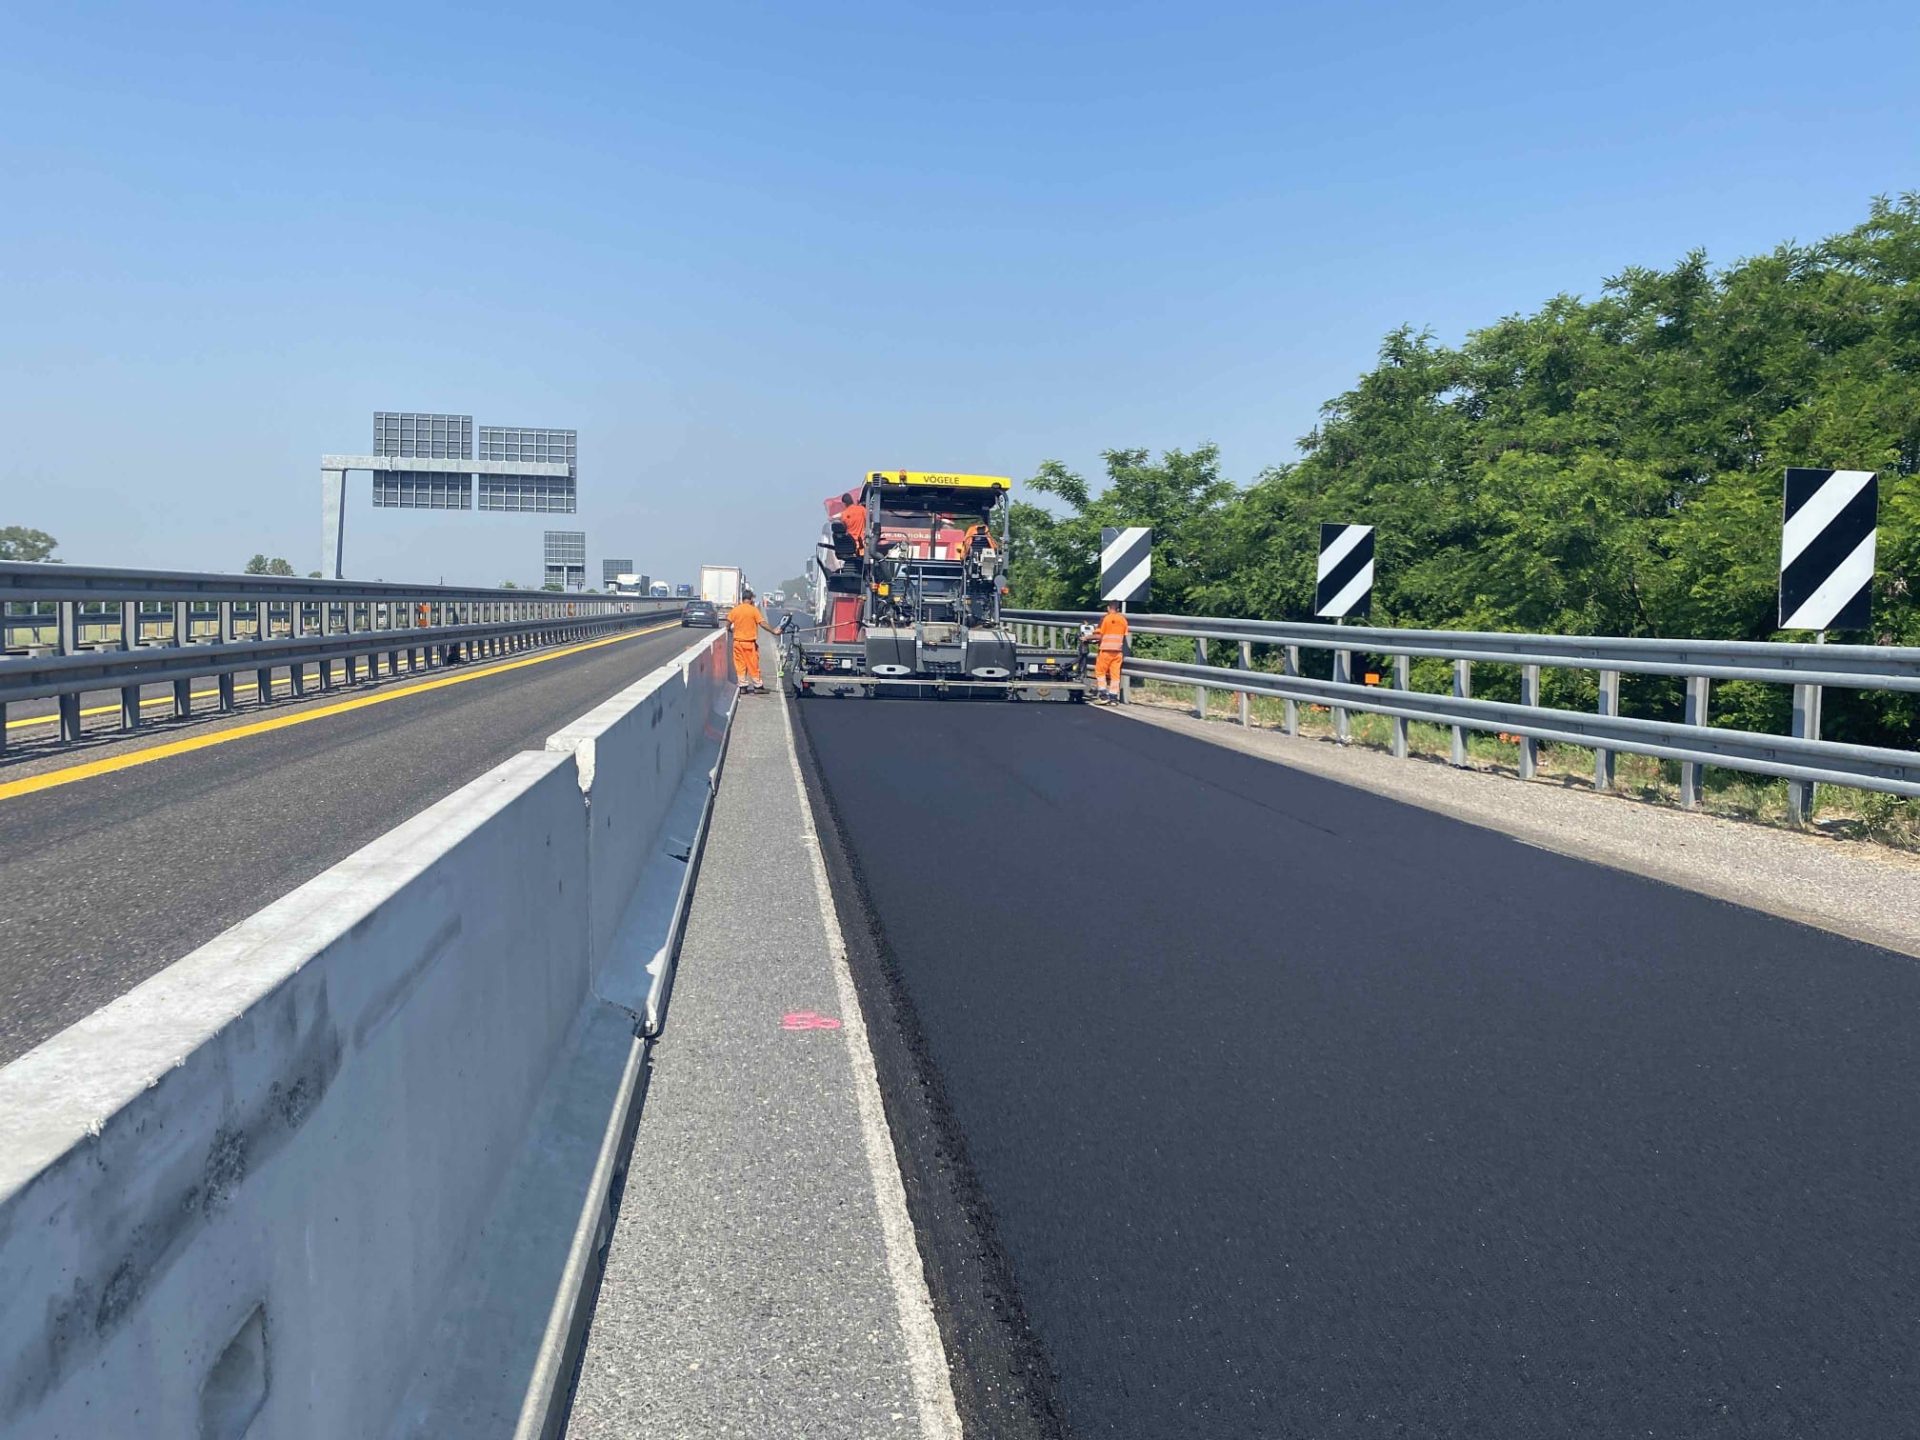 Autostrada A21 – Accordo Quadro per interventi di risanamento profondo in tratte saltuarie della corsia di marcia lenta tratta da Km 125+398 a Km 164+627